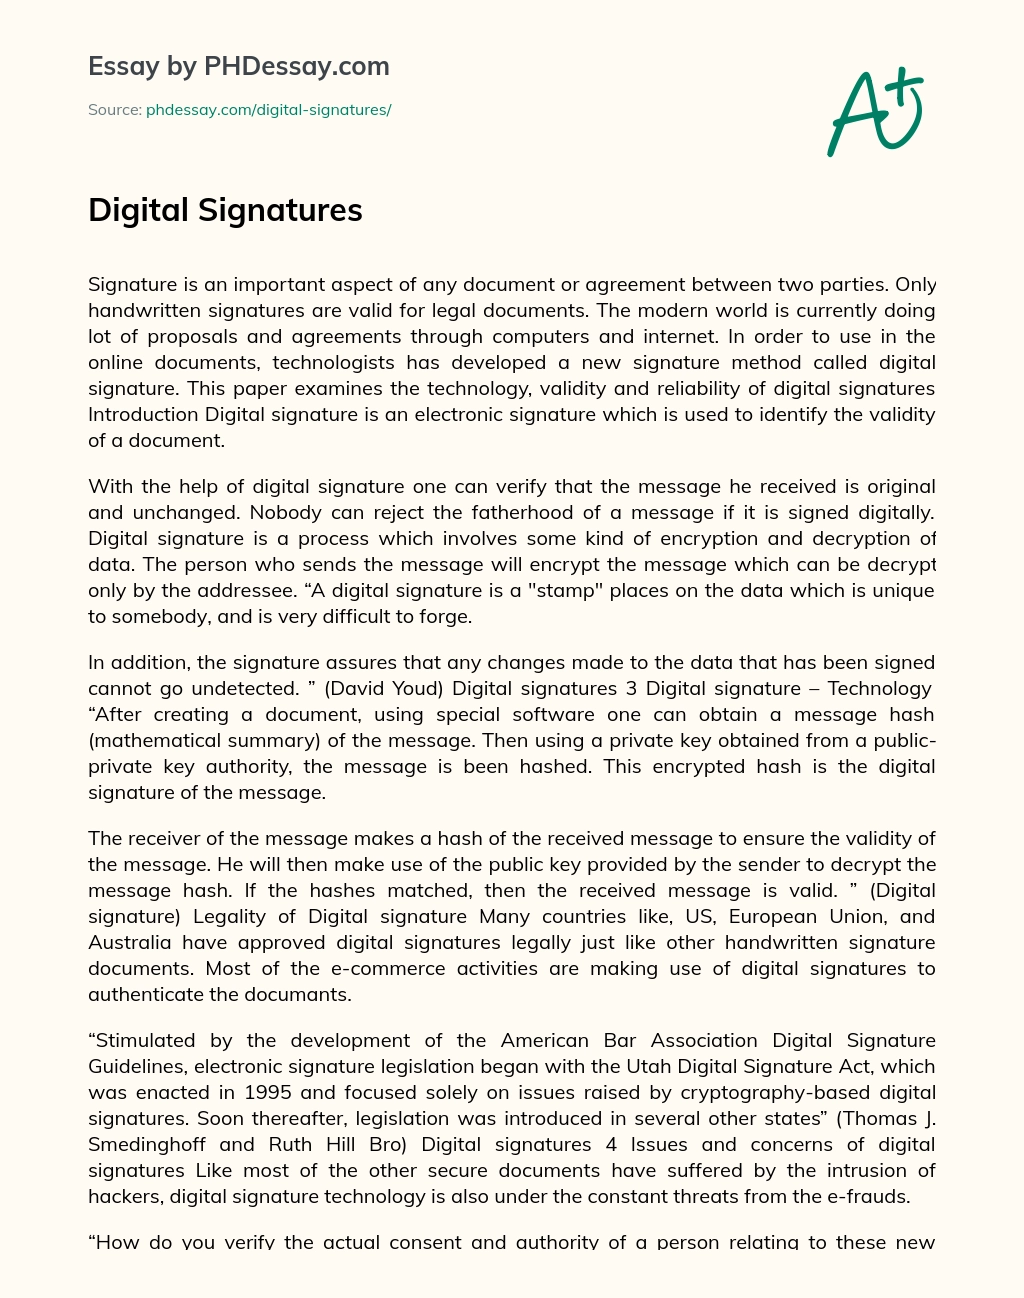 Digital Signatures essay